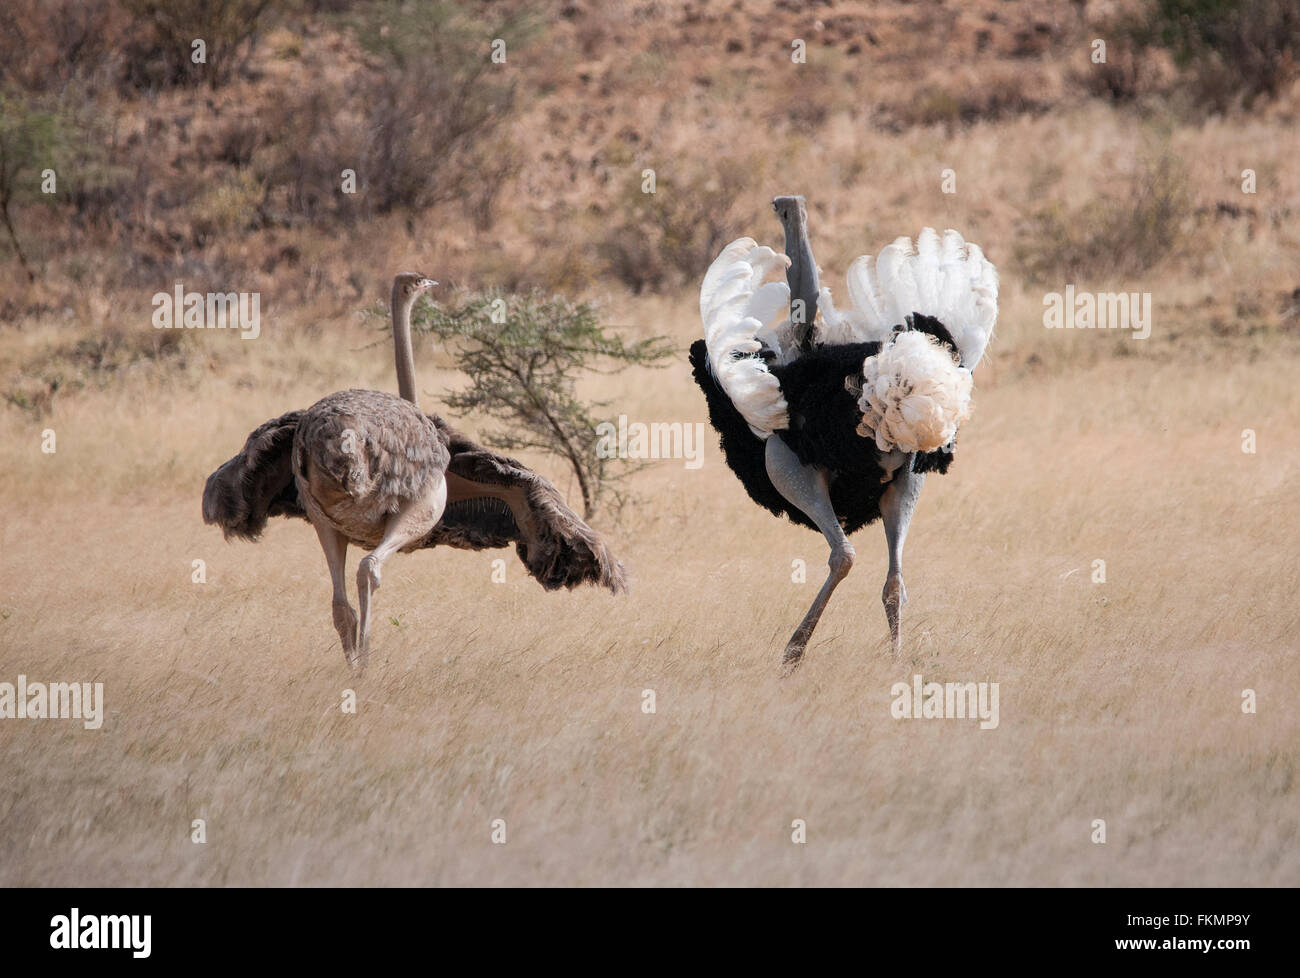 Maschio e femmina di struzzo somalo (Struthio camelus molybdophanes) visualizzando il comportamento di corteggiamento, Samburu, Kenya, Africa orientale Foto Stock